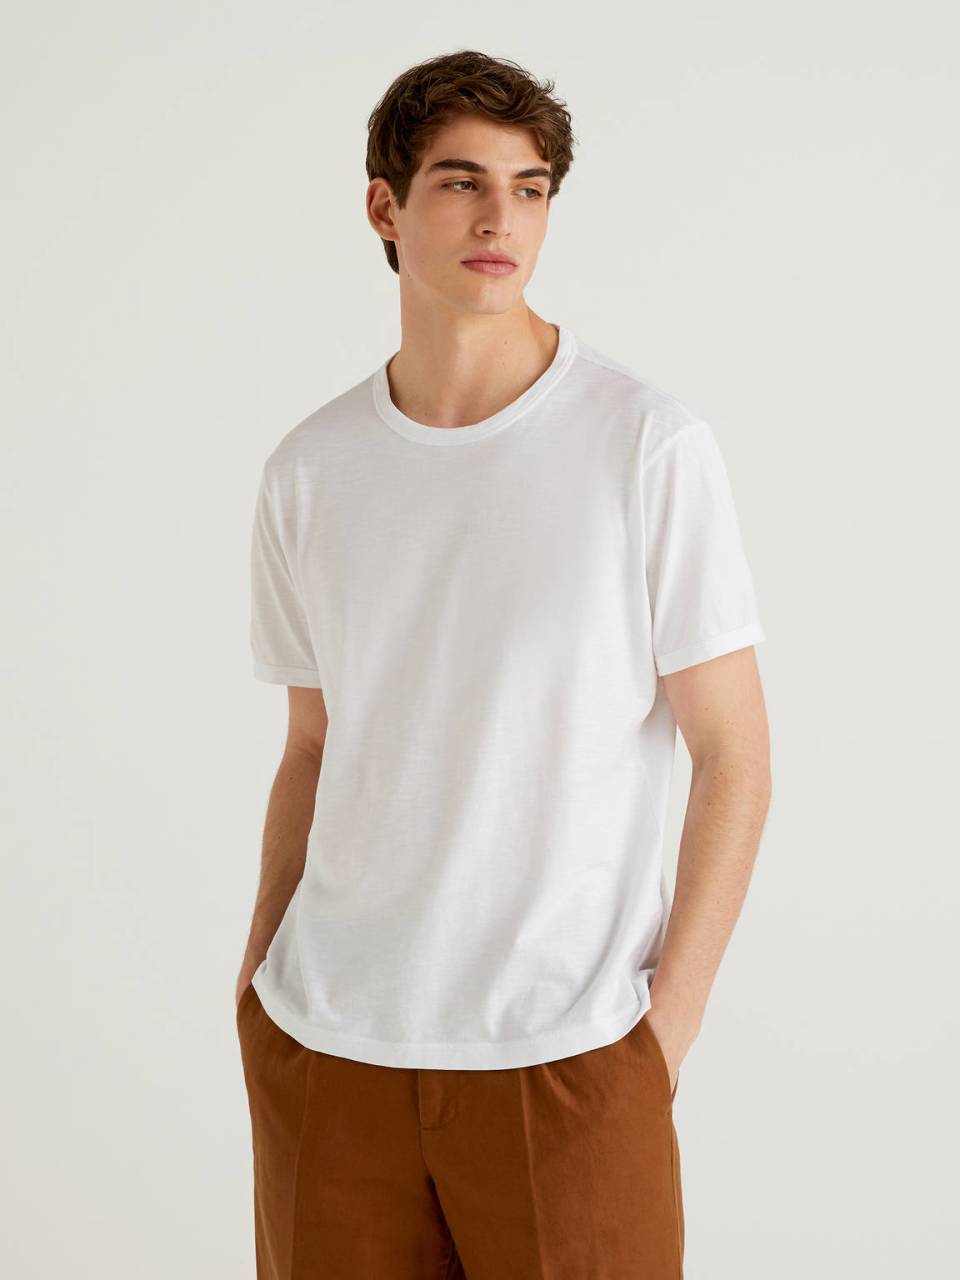 Benetton White 100% cotton t-shirt with print. 1